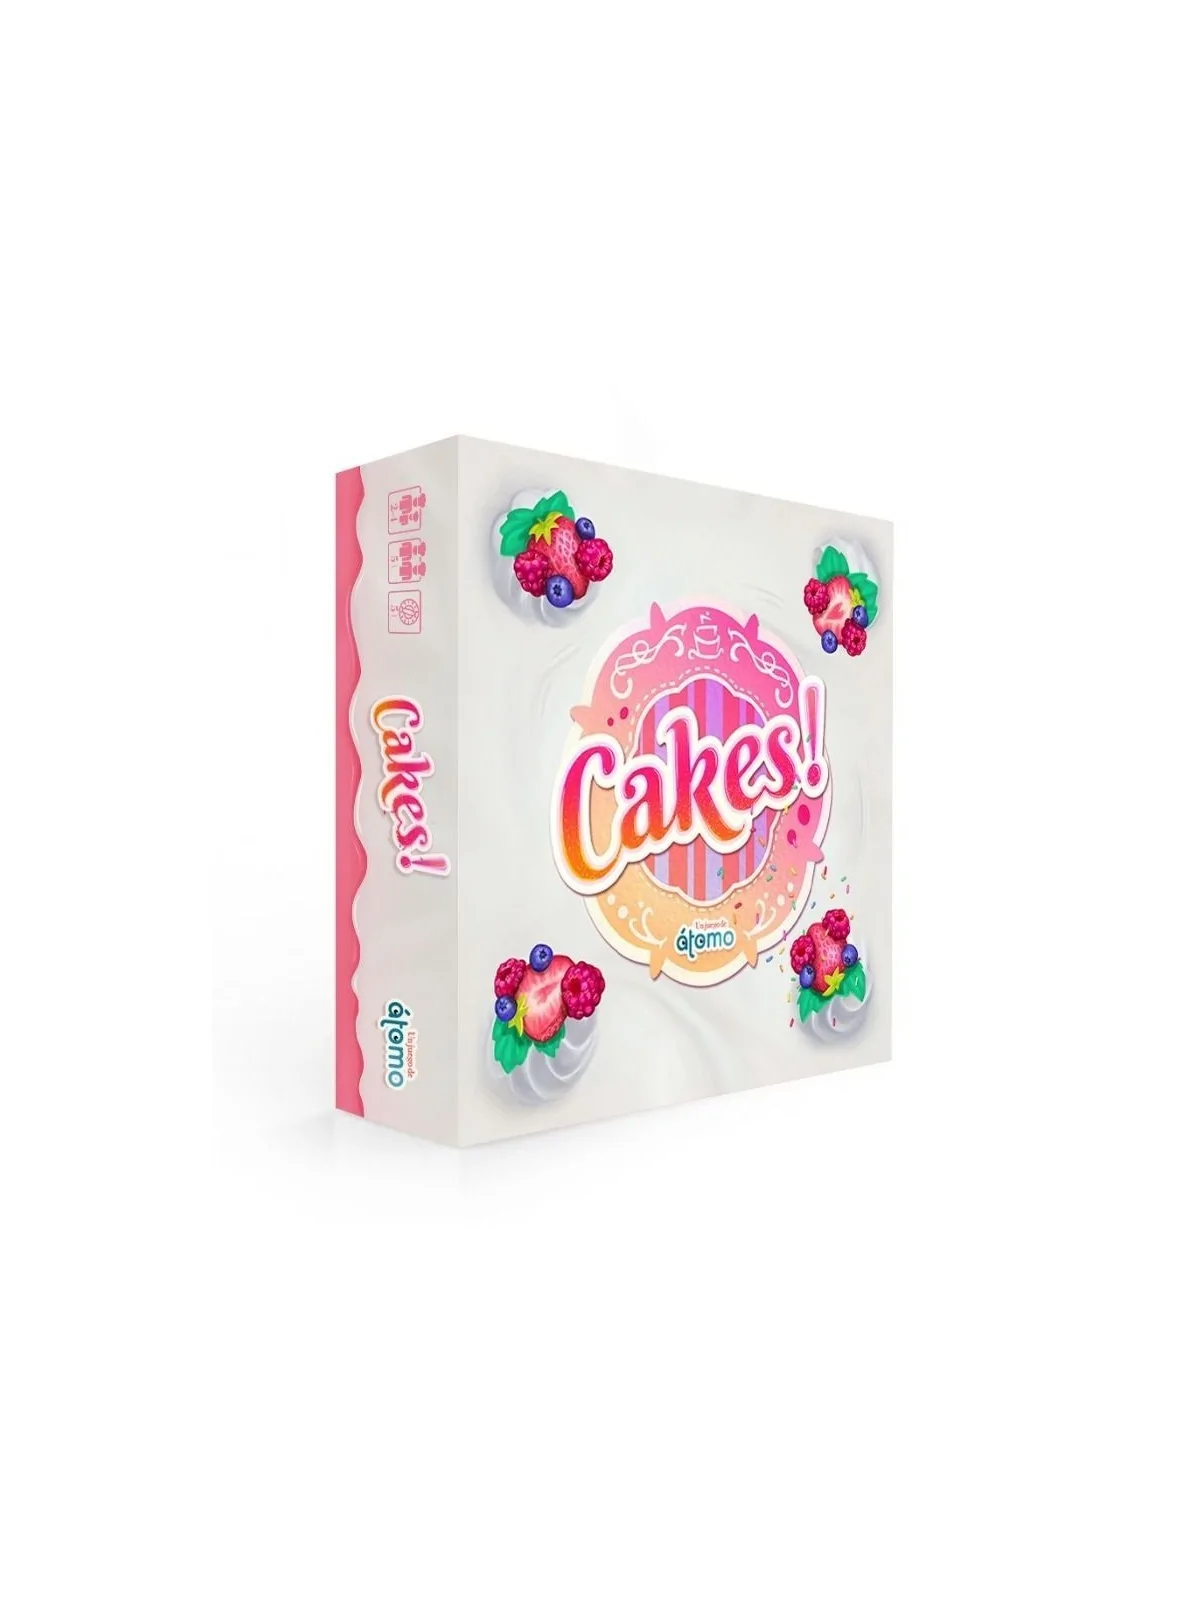 Comprar Cakes! barato al mejor precio 25,95 € de Atomo Games